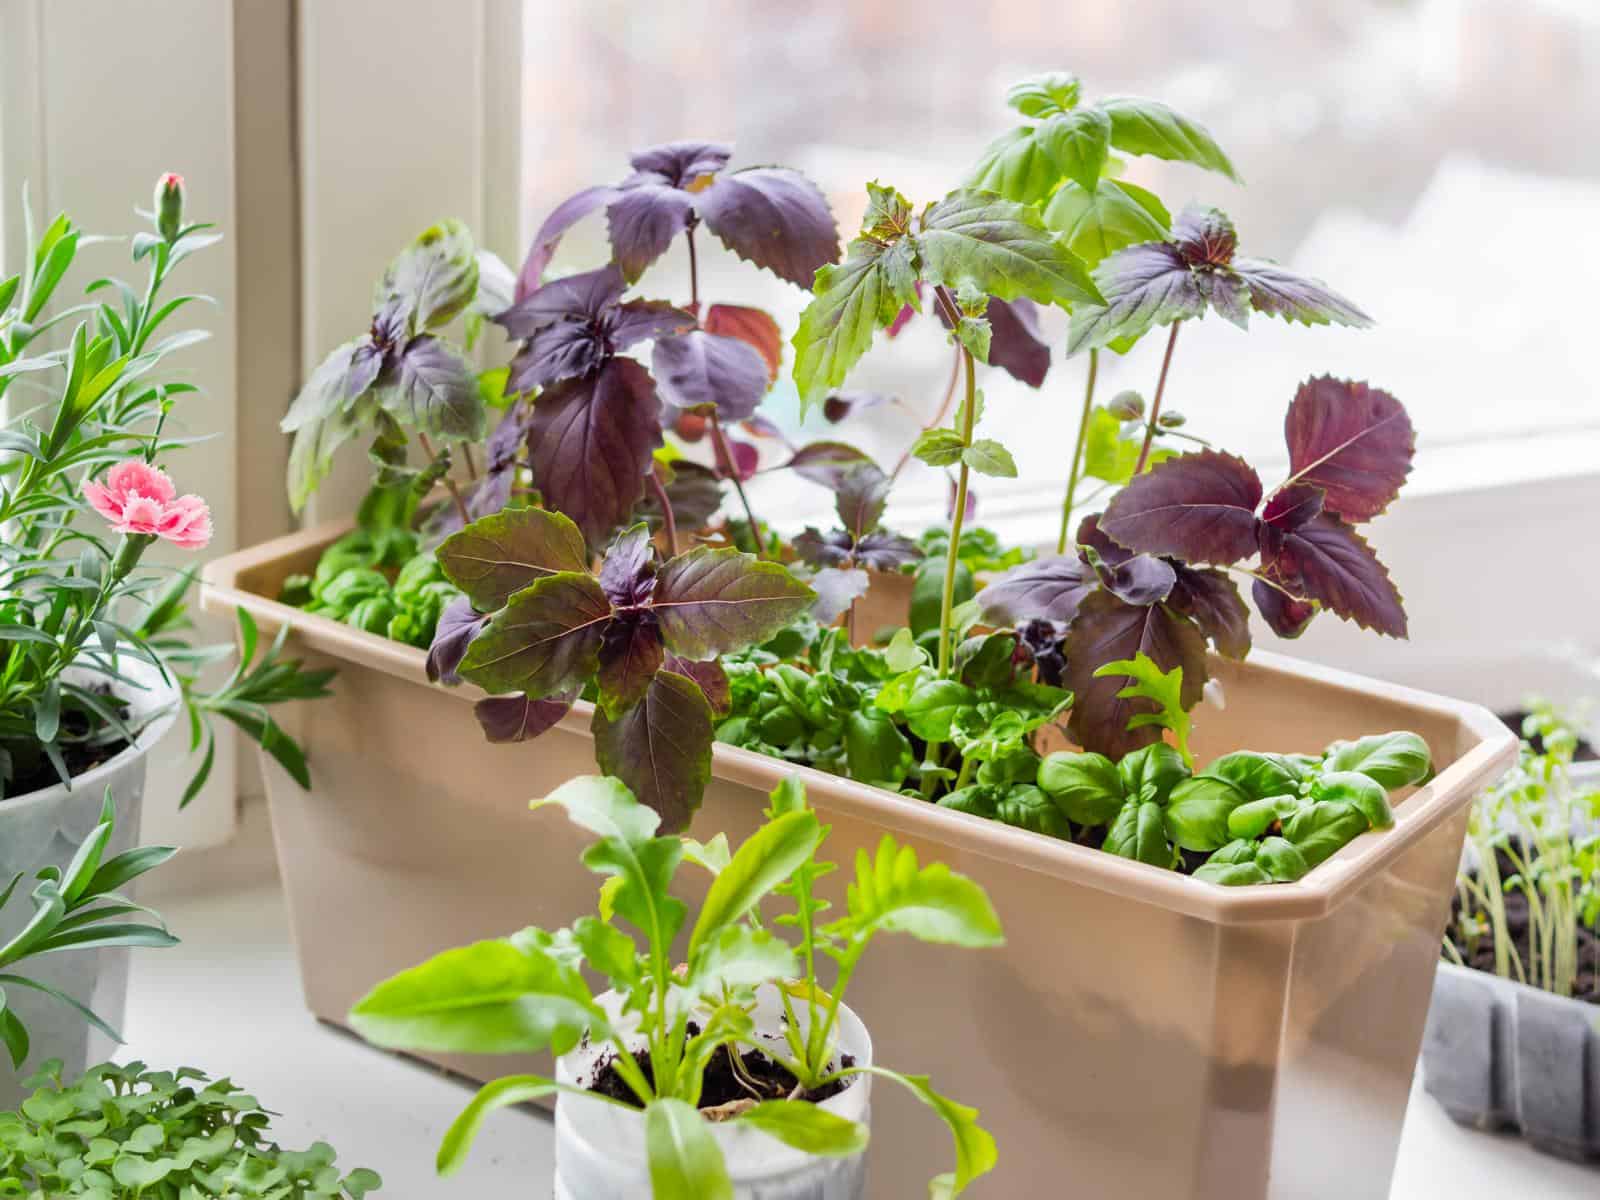 Herb garden in rectangular and round pots on kitchen window sill. 